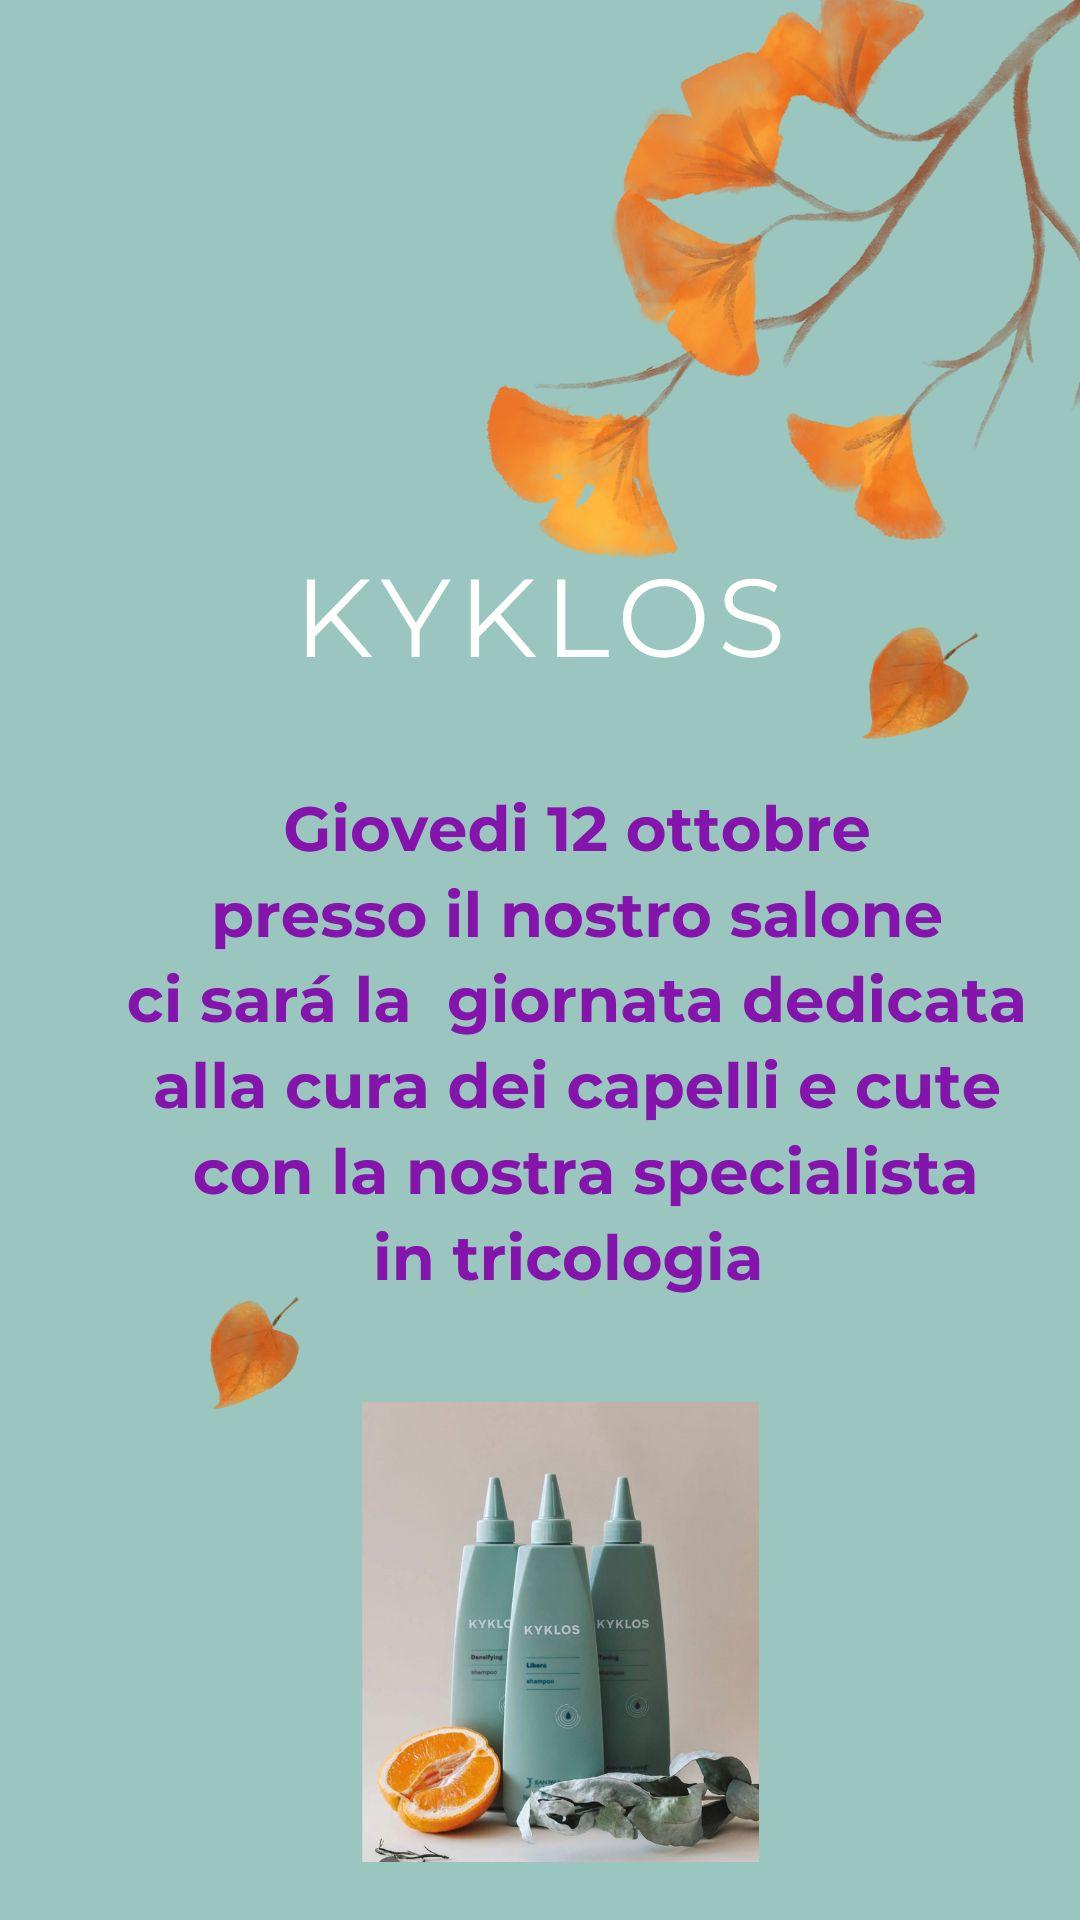 Kyklos Day: il 12 ottobre Giornata tricologica con diagnosi del capello